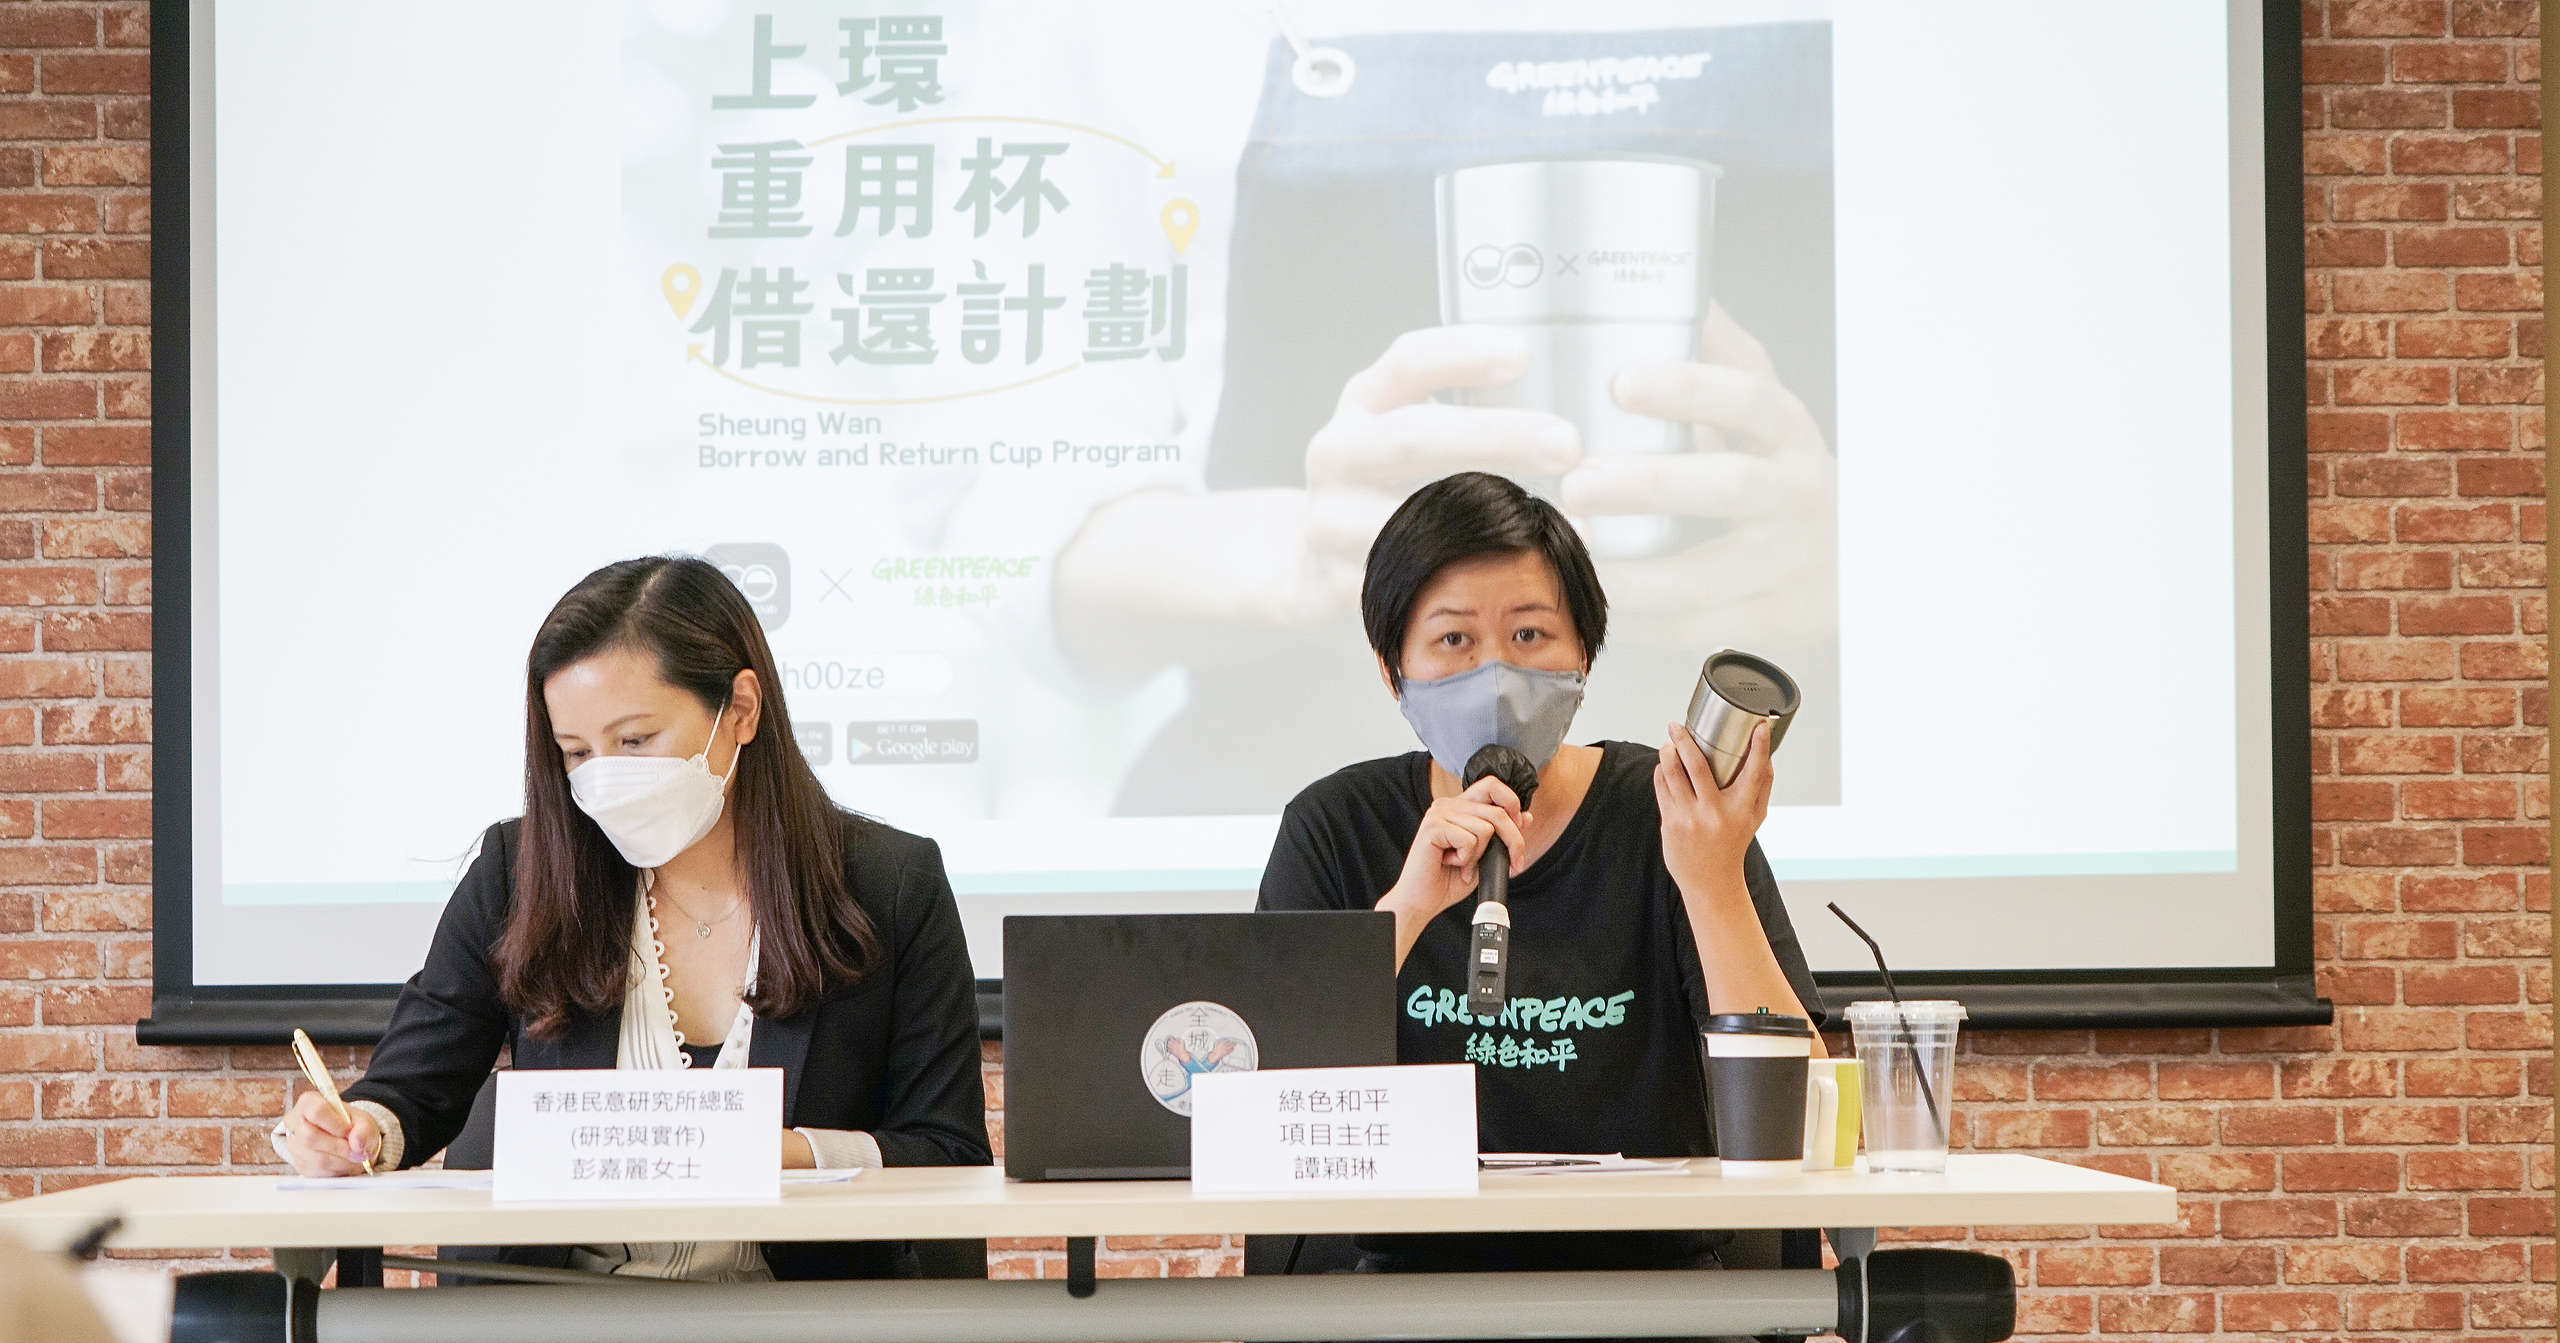 香港政府一直以來側重回收政策，但源頭減廢才是真正解決塑膠污染的方法。根據調查，香港市民普遍對新興的可重複使用的容器借還服務看法正面。